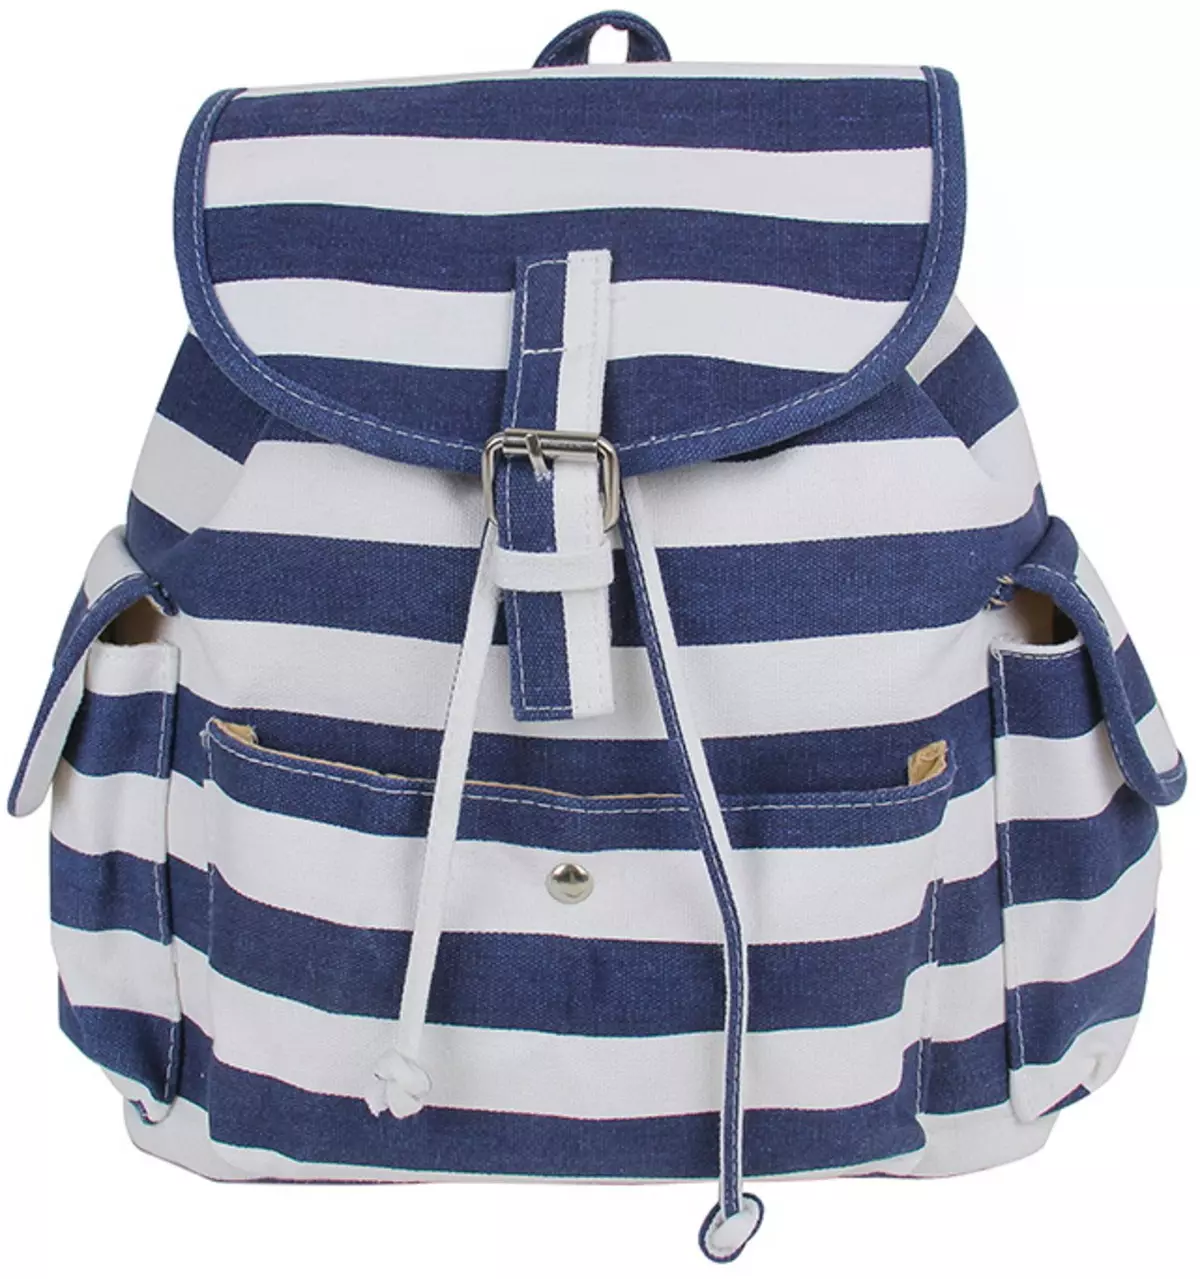 Рюкзаки Kari: огляд жіночих моделей, шкільні рюкзаки для дівчаток і хлопчиків, білі і чорні рюкзаки інших брендів, представлених в магазині 15431_27